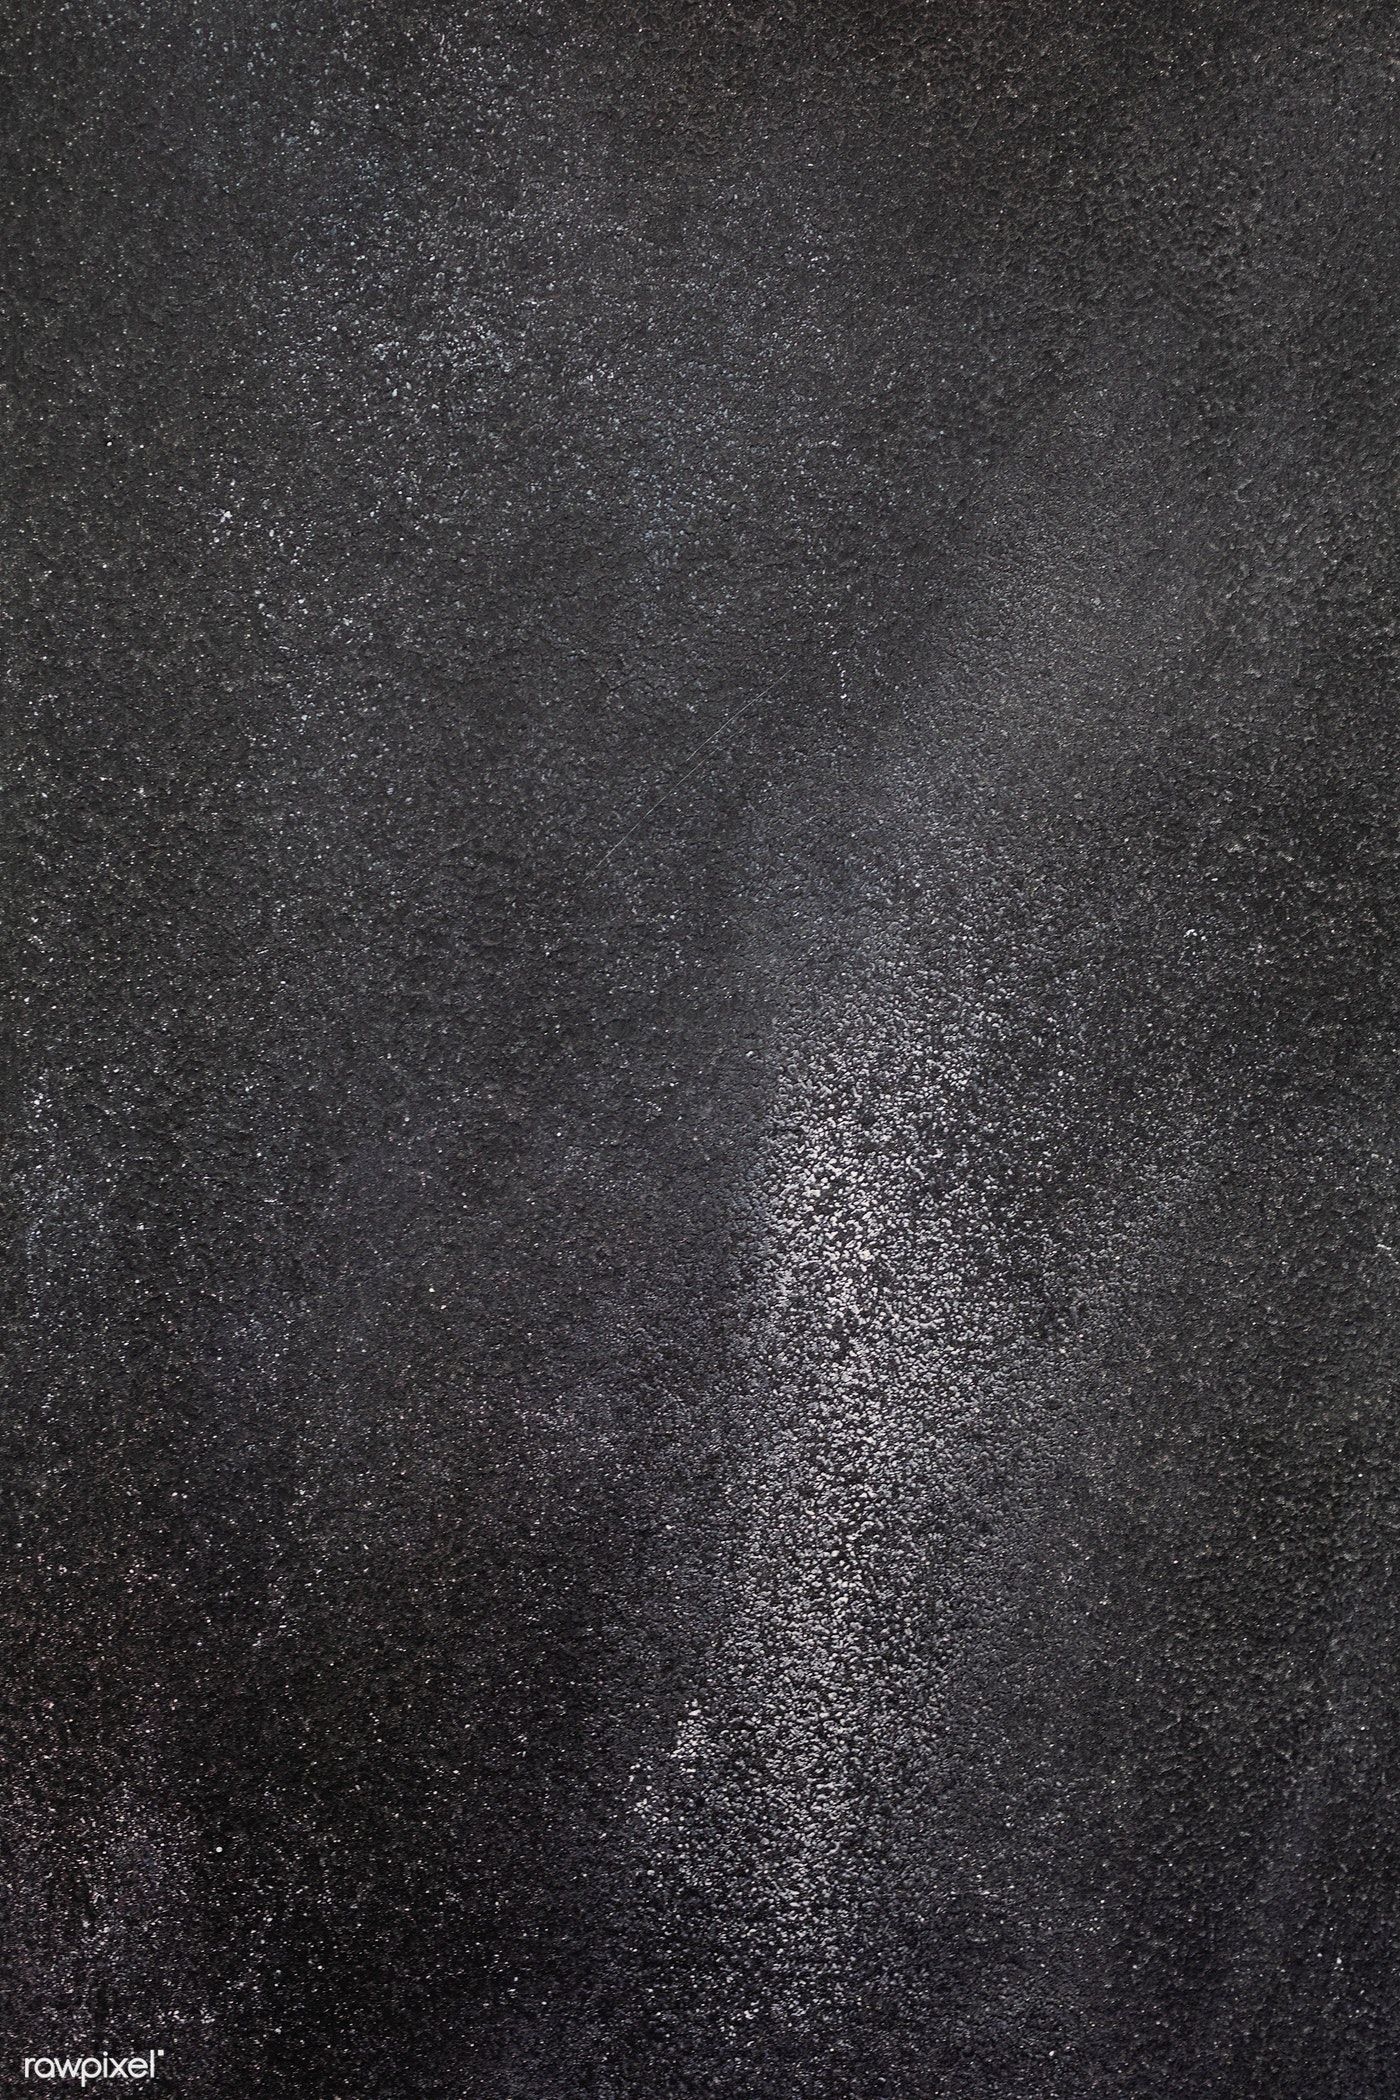 Premium Image Of Dark Gray Rough Concrete Background